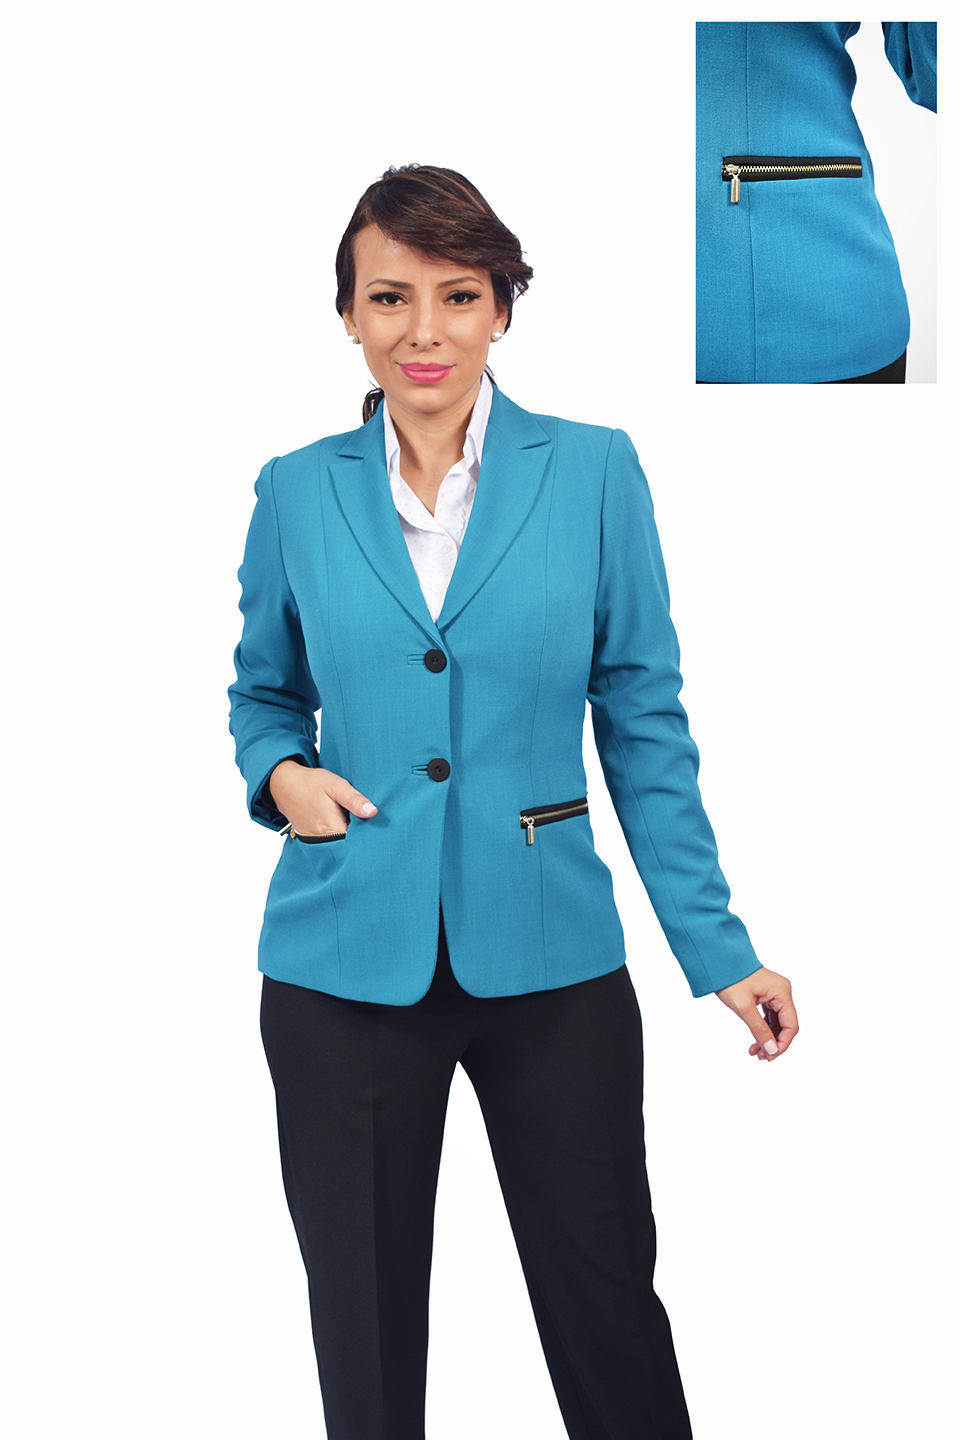 uniforme empresarial linea ejecutiva ref: rubi | Celmy diseño y fabricación  de uniformes empresariales y uniformes ejecutivos